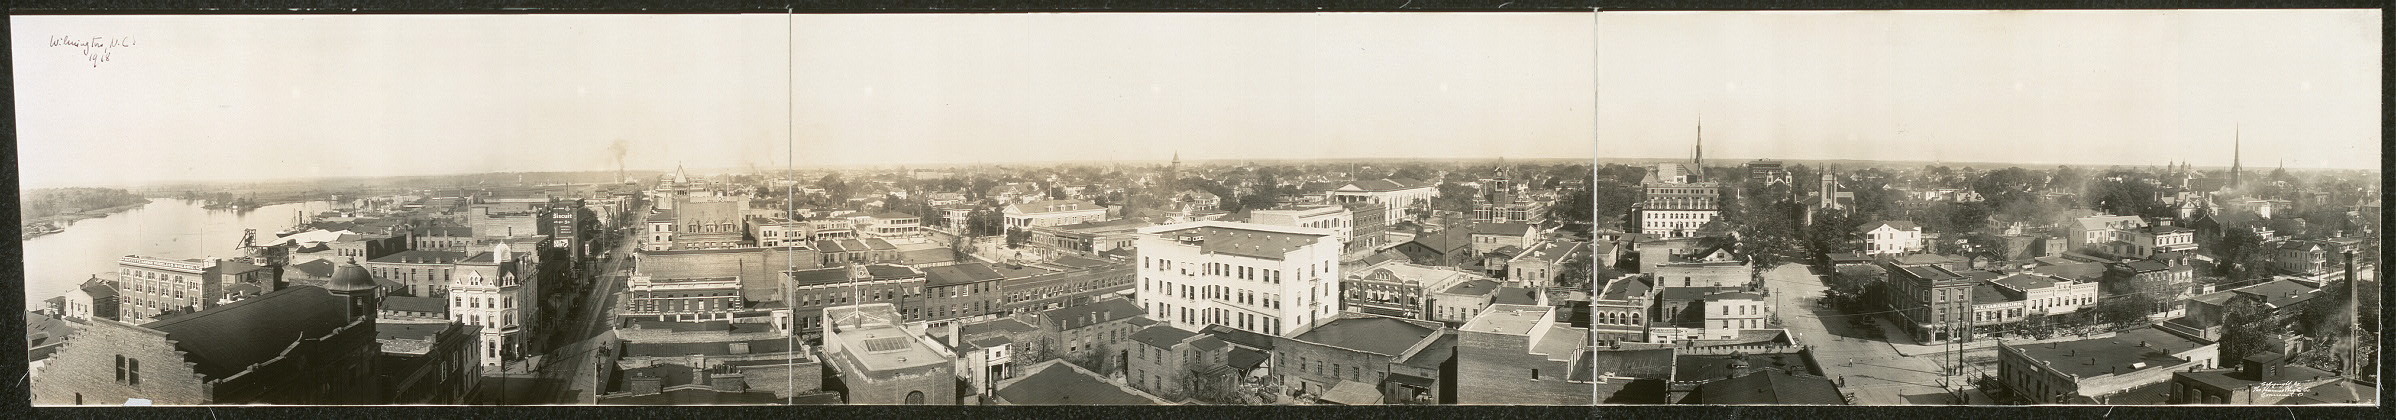 Wilmington in 1918